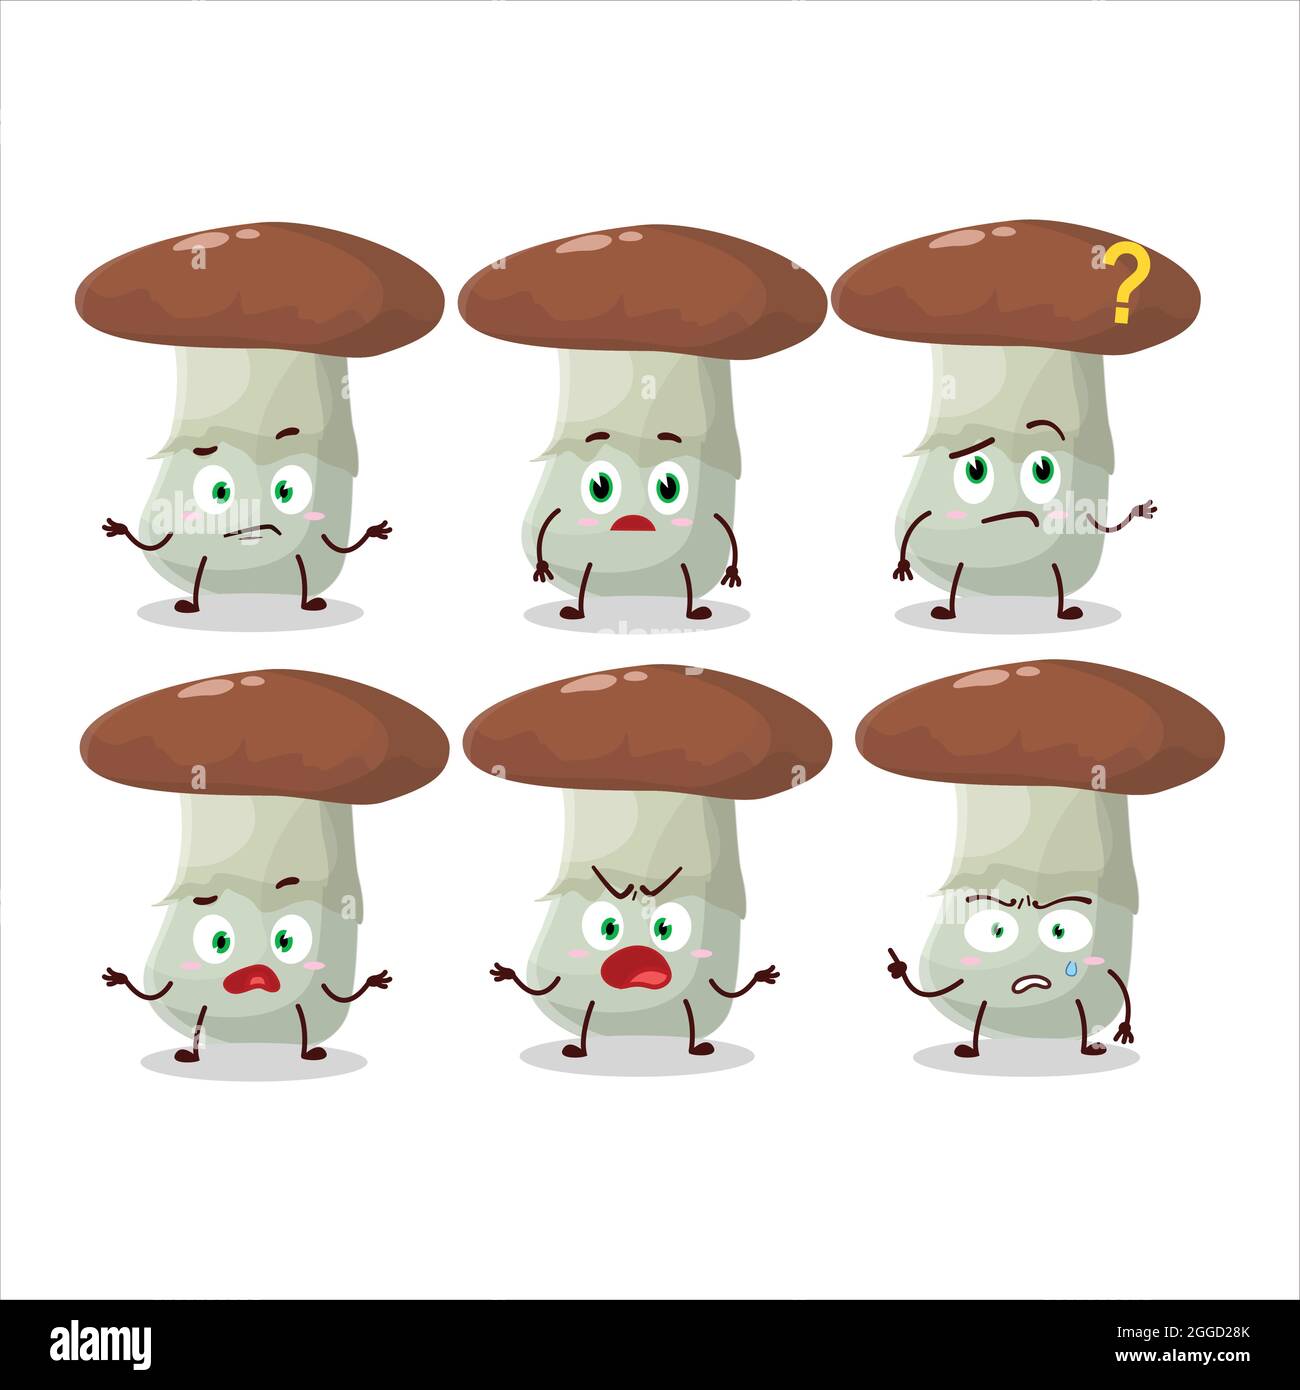 Cartoon-Charakter von Suillus Pilz mit welchem Ausdruck. Vektorgrafik Stock Vektor